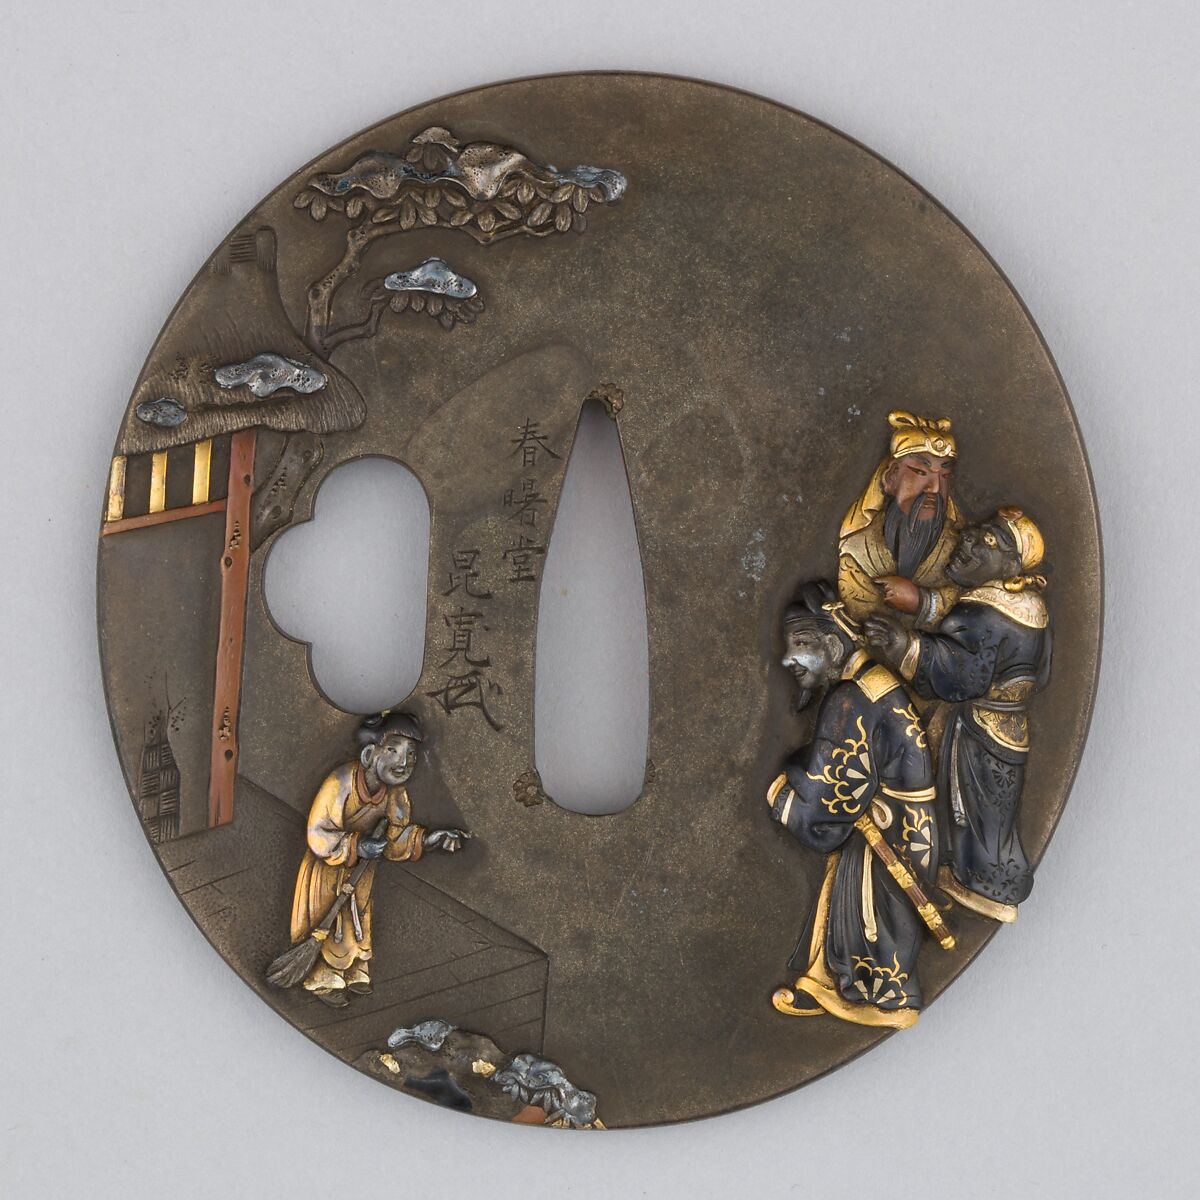 Sword Guard (Tsuba), Copper-silver alloy (shibuichi), copper-gold alloy (shakudō), copper, gold, silver, Japanese 